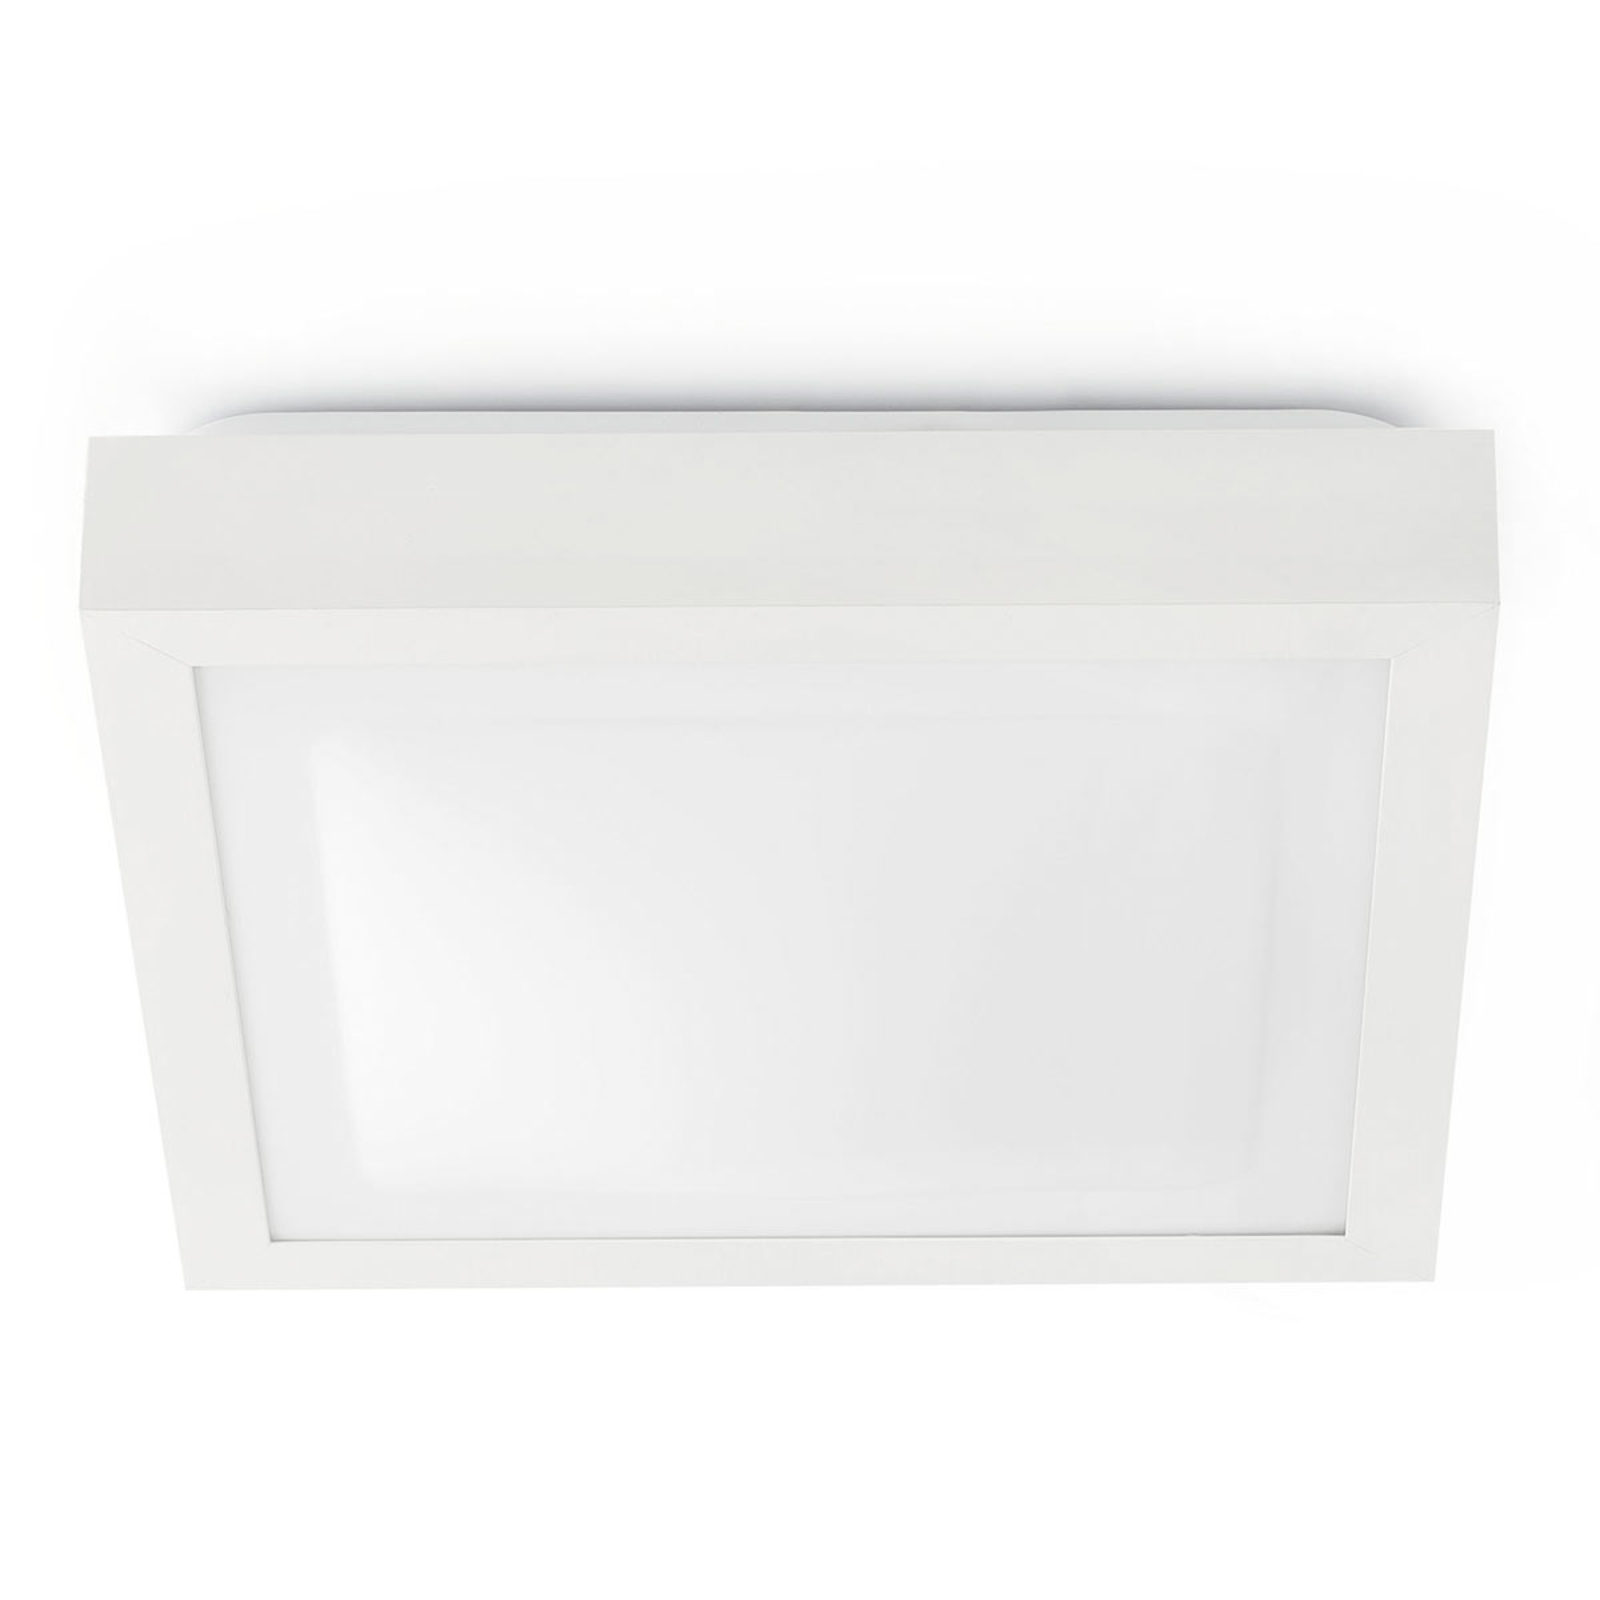 Tola bathroom ceiling light, 32 x 32 cm, white